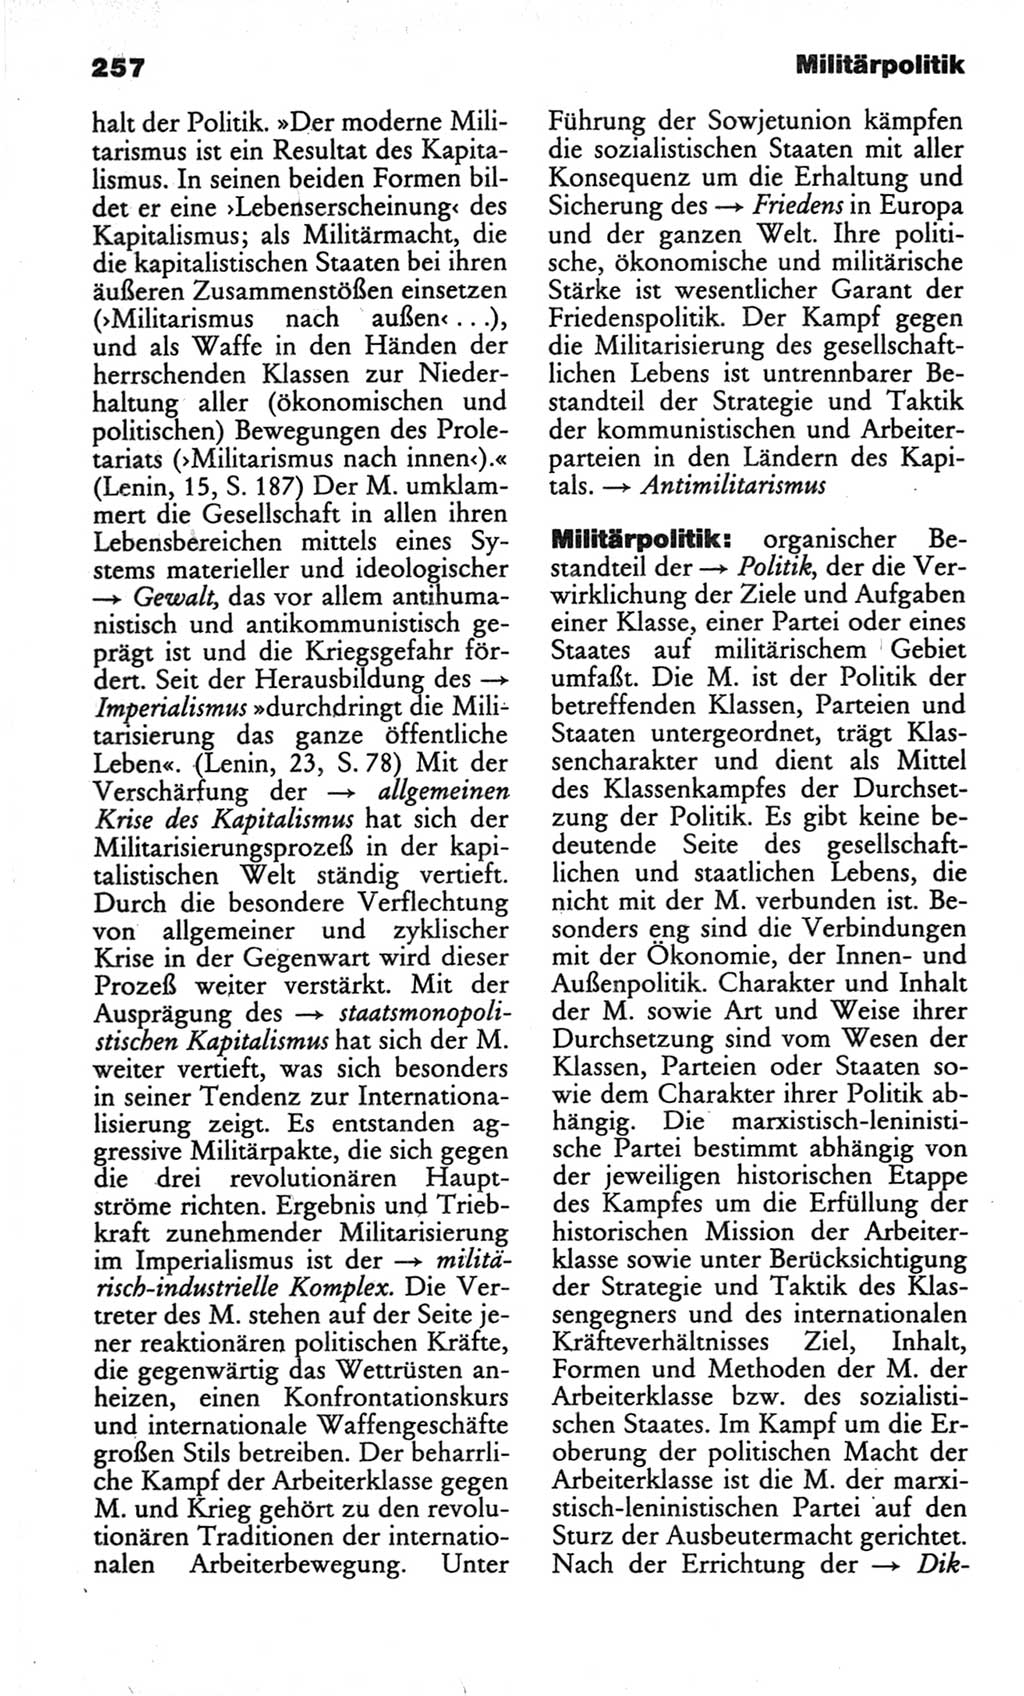 Wörterbuch des wissenschaftlichen Kommunismus [Deutsche Demokratische Republik (DDR)] 1982, Seite 257 (Wb. wiss. Komm. DDR 1982, S. 257)